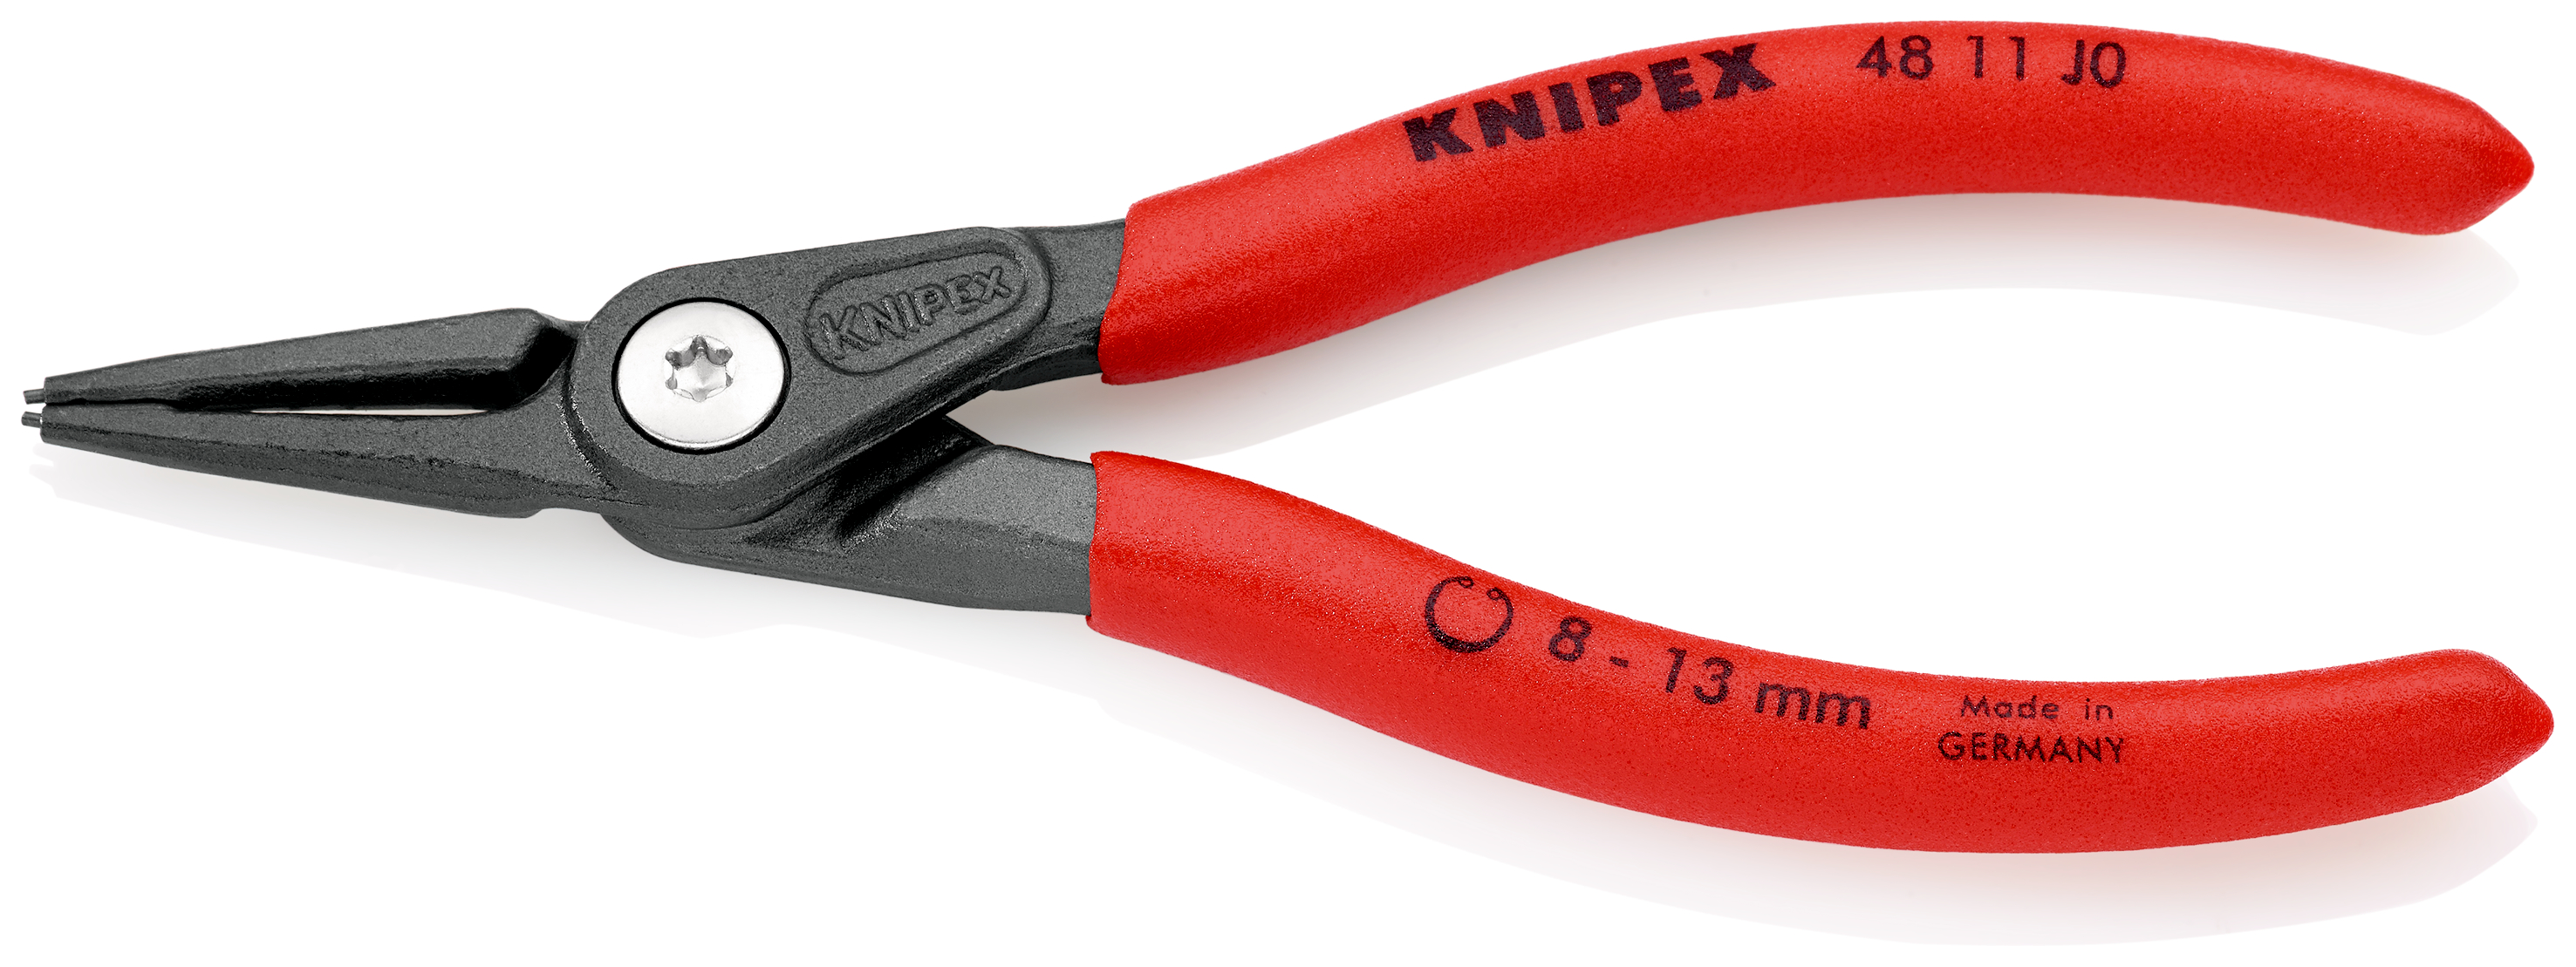 Knipex 4811J0 Cleste pentru inele de siguranta de interior, lungime 140 mm